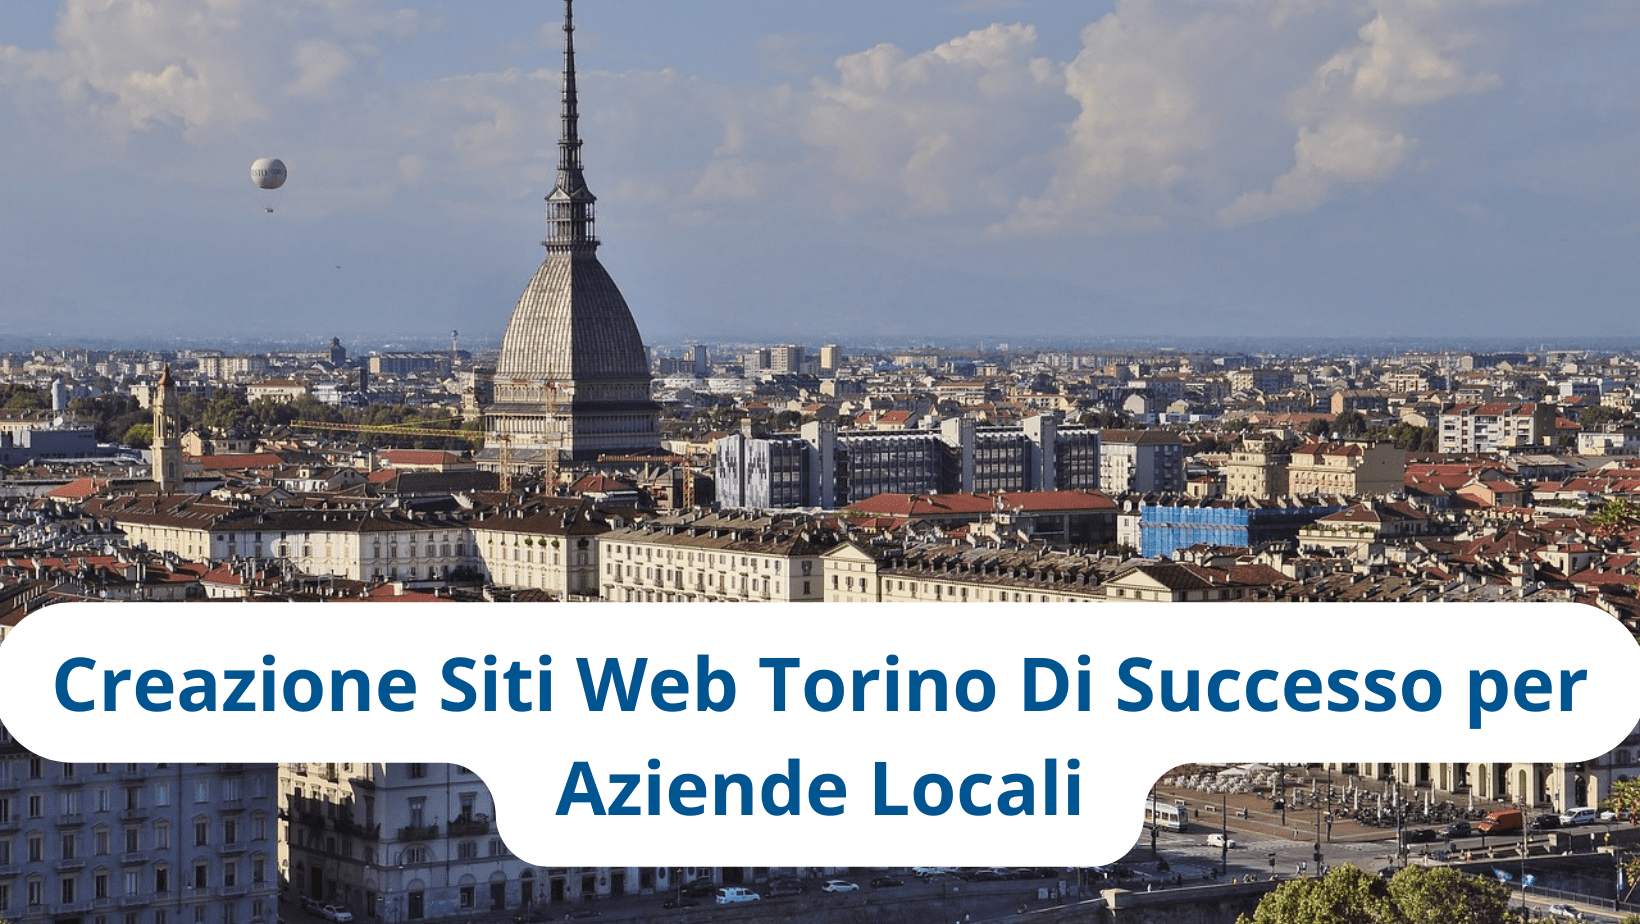 Creazione Siti Web Torino Di Successo per Aziende Locali